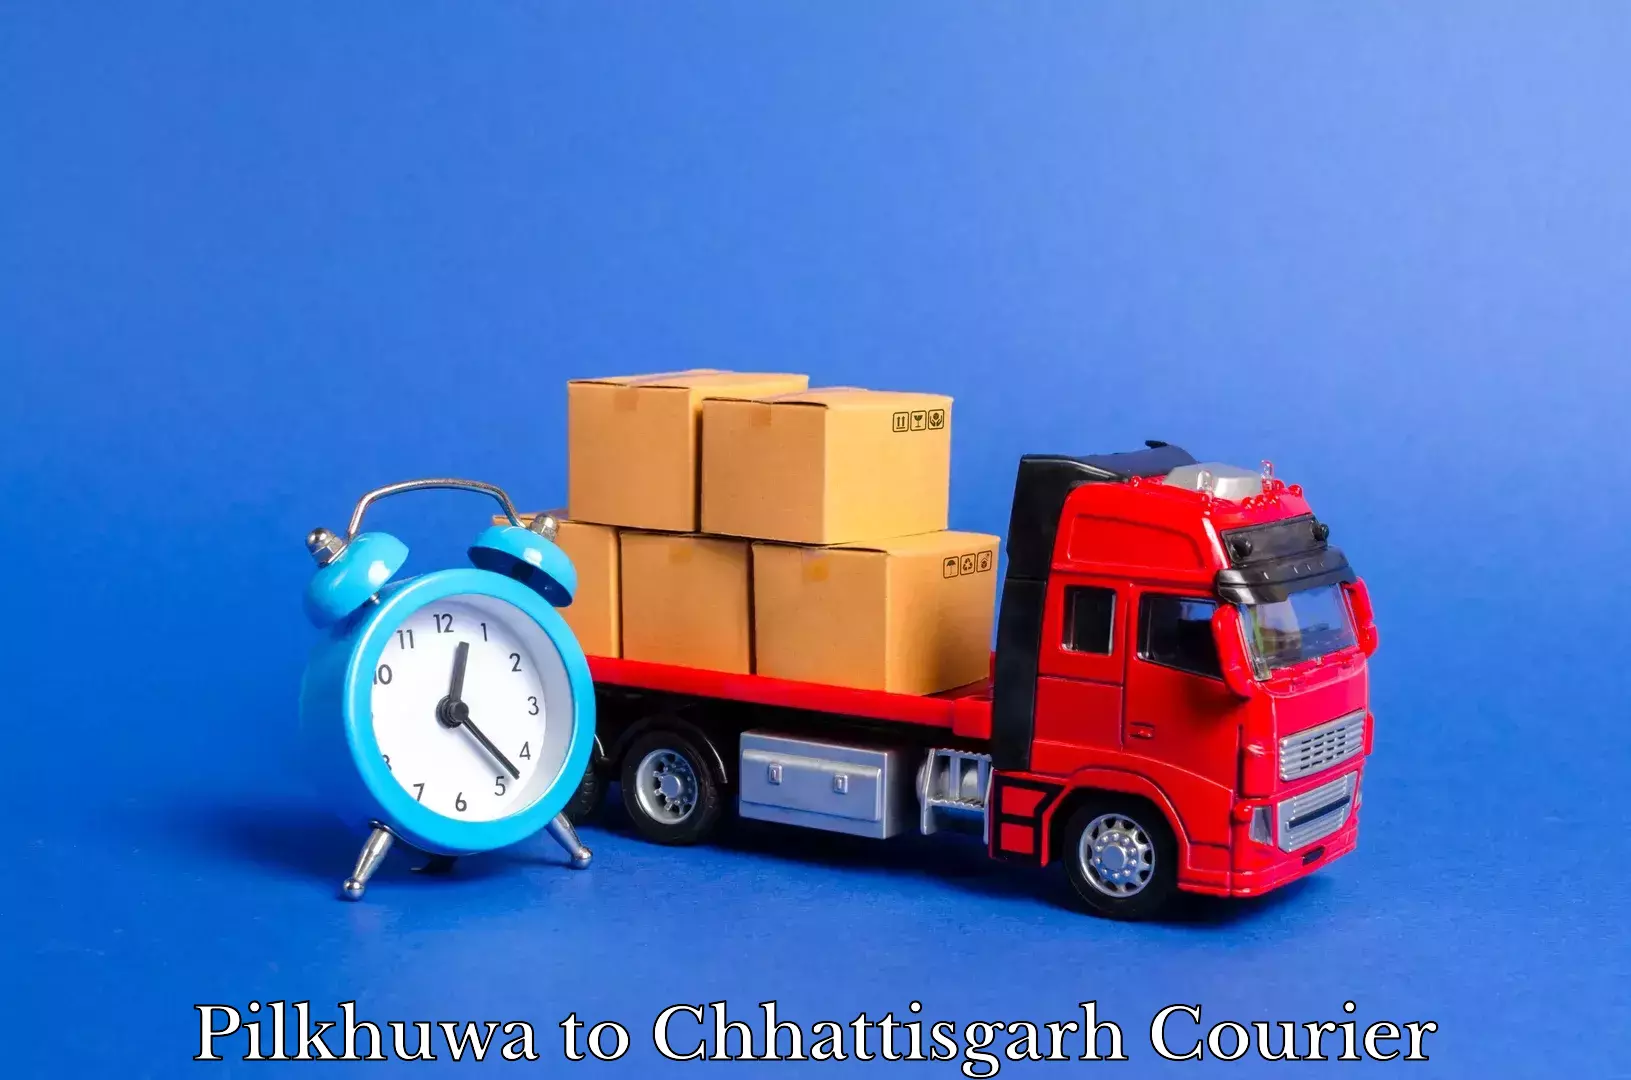 Moving and packing experts Pilkhuwa to Chirimiri